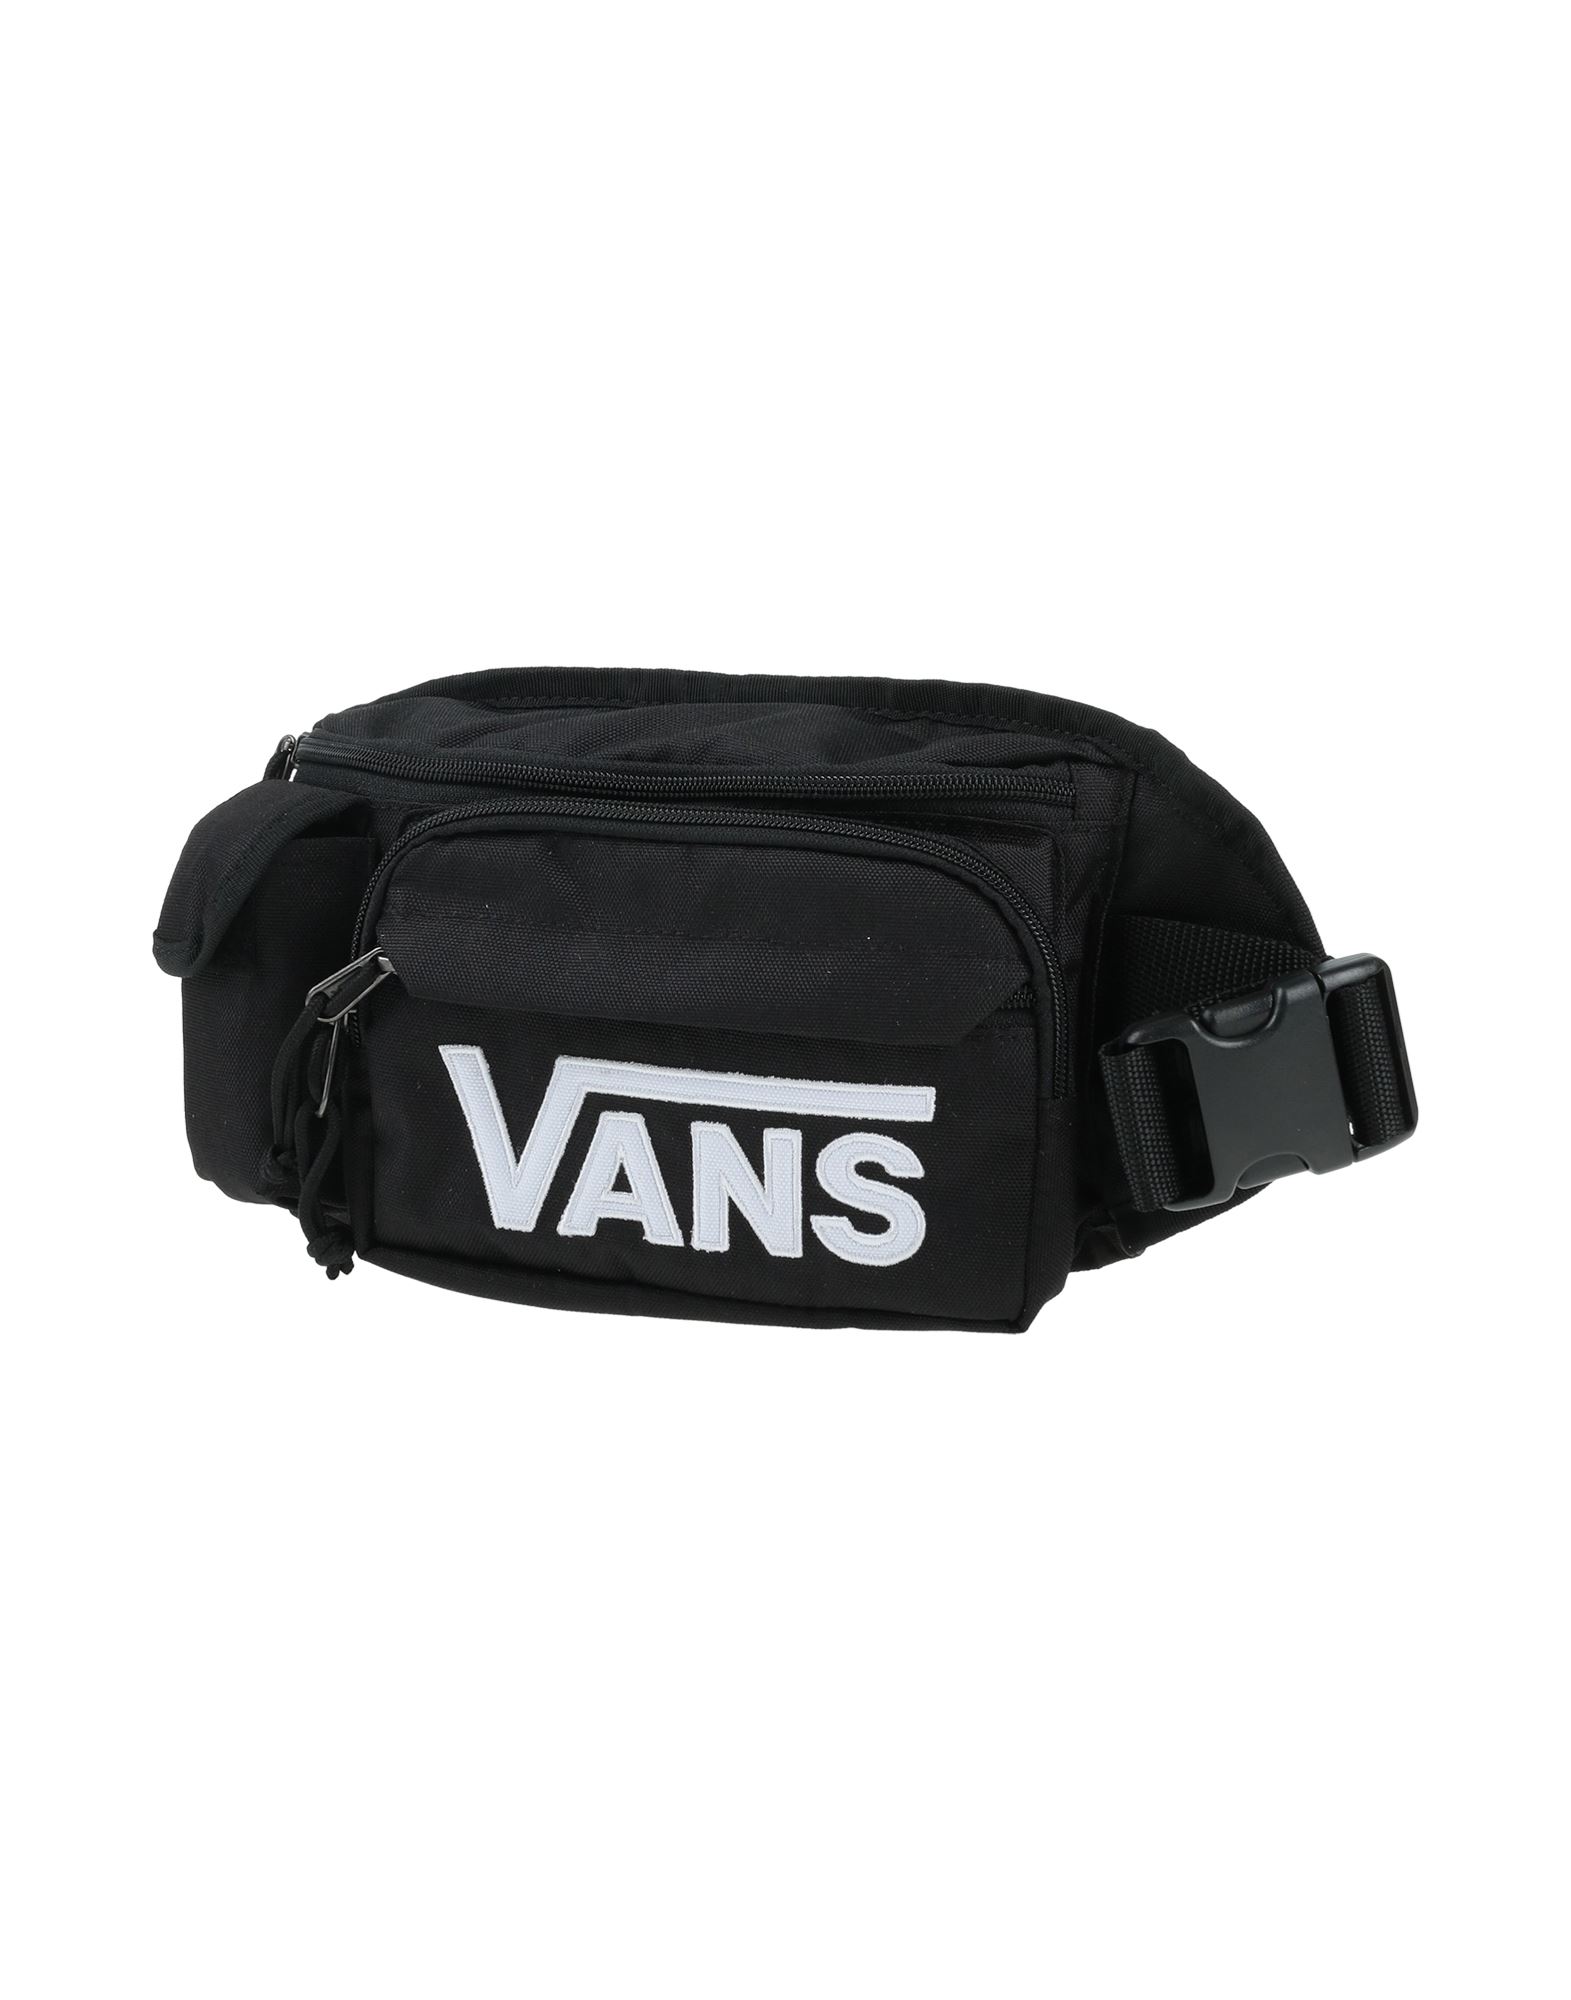 Vans Bum Bags In Black